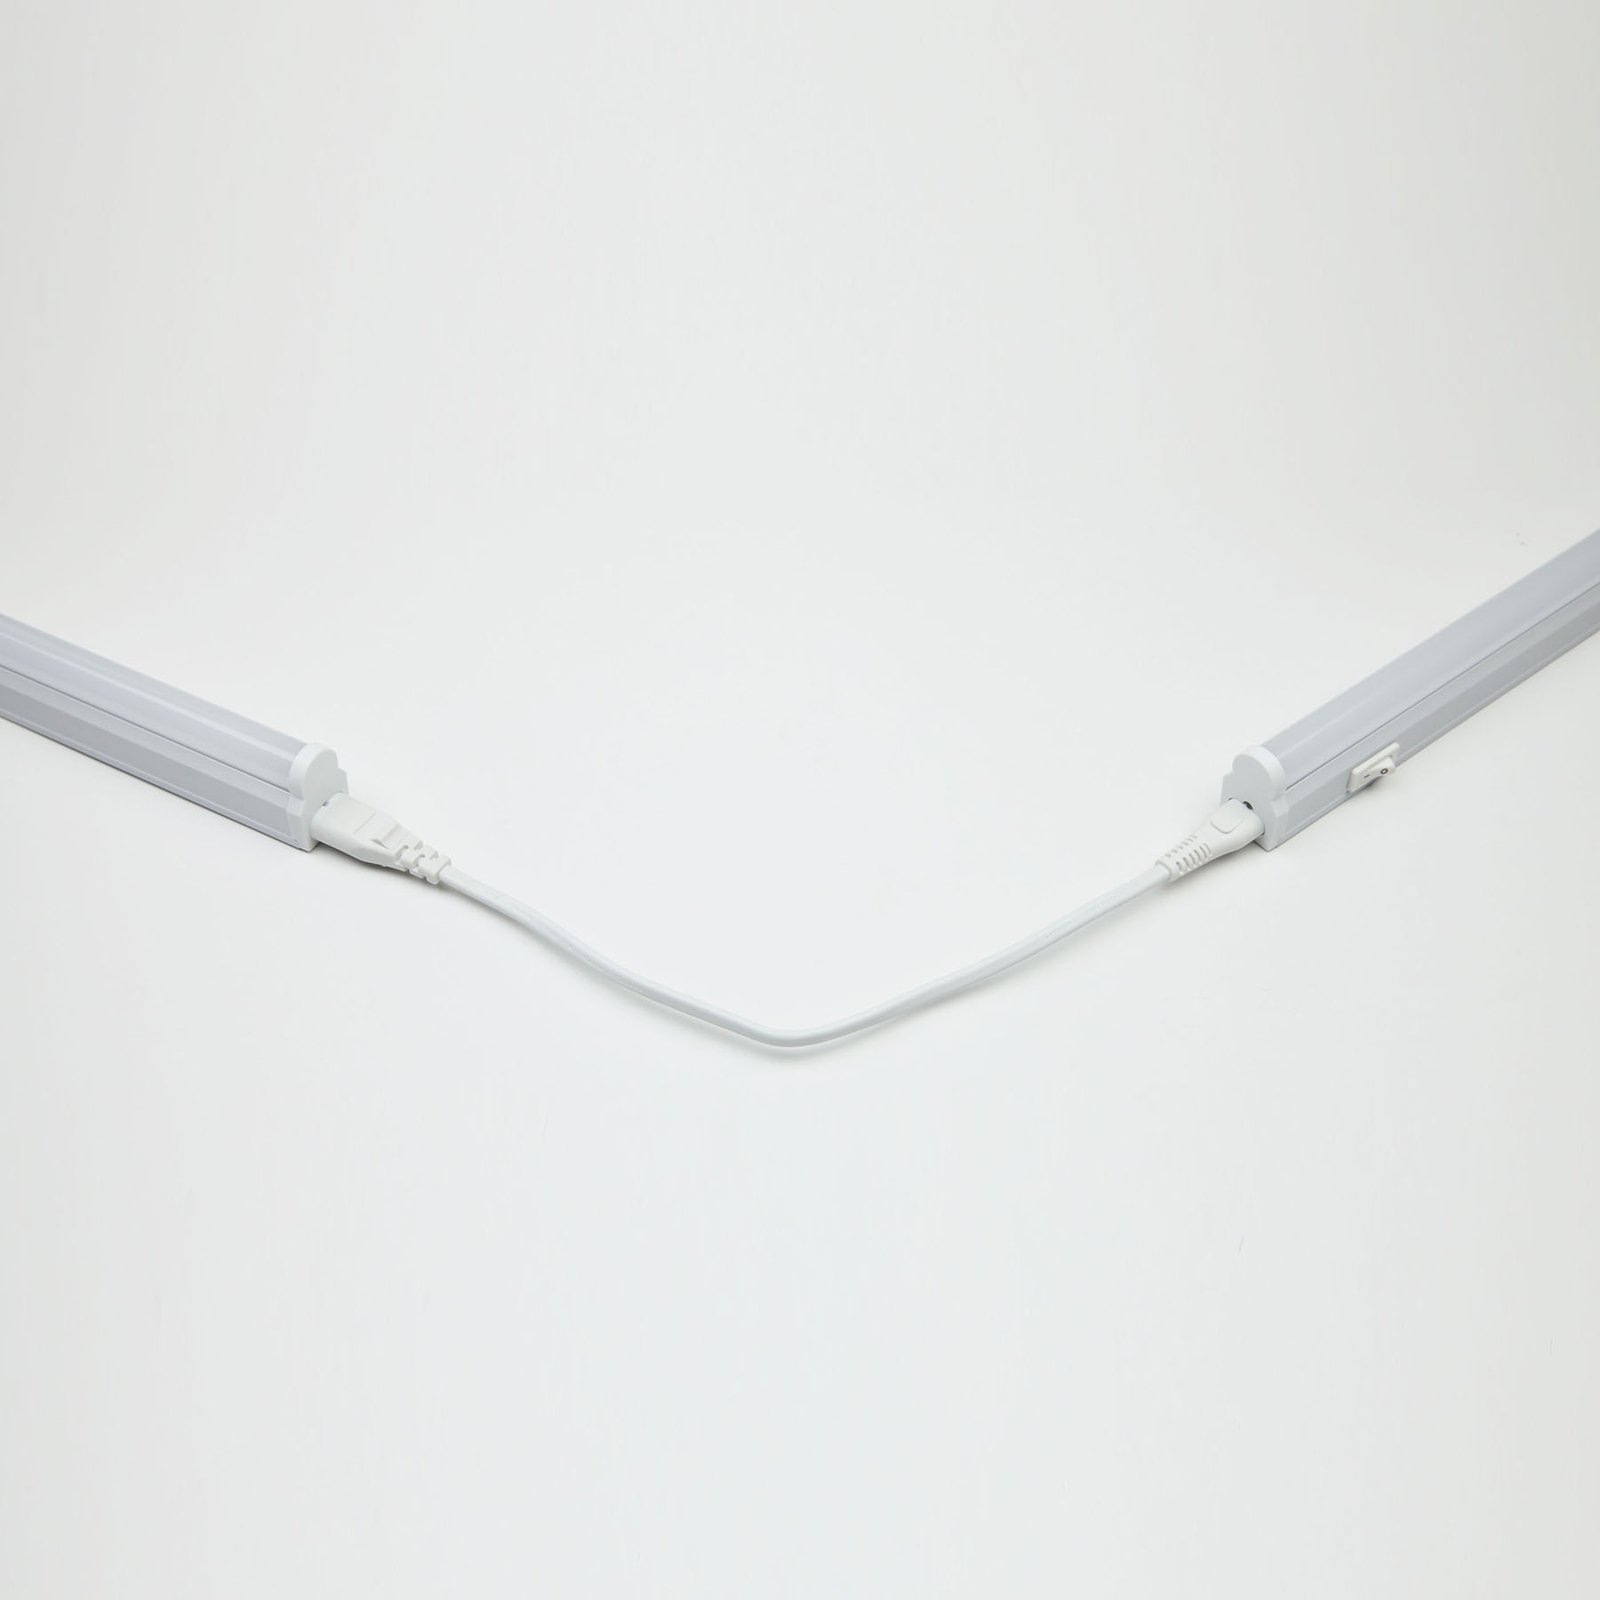 Svetelná LED lišta 982, dĺžka 31,5 cm